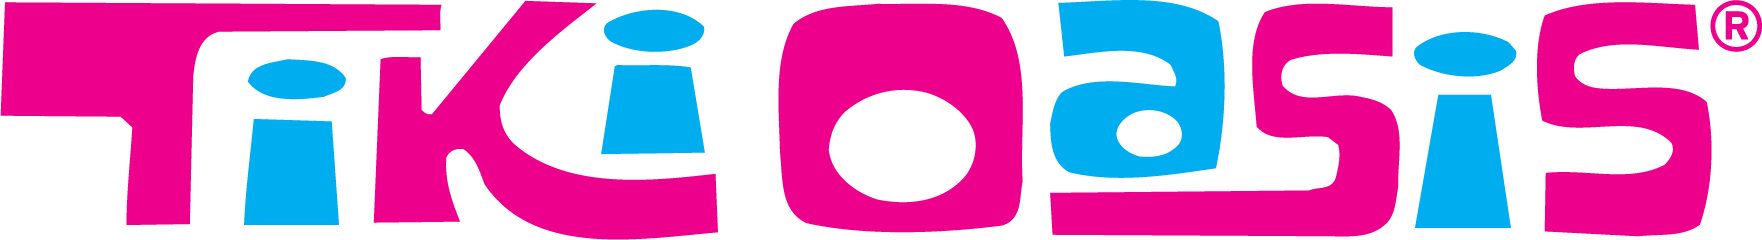 Fikir Oasis Logo PNG